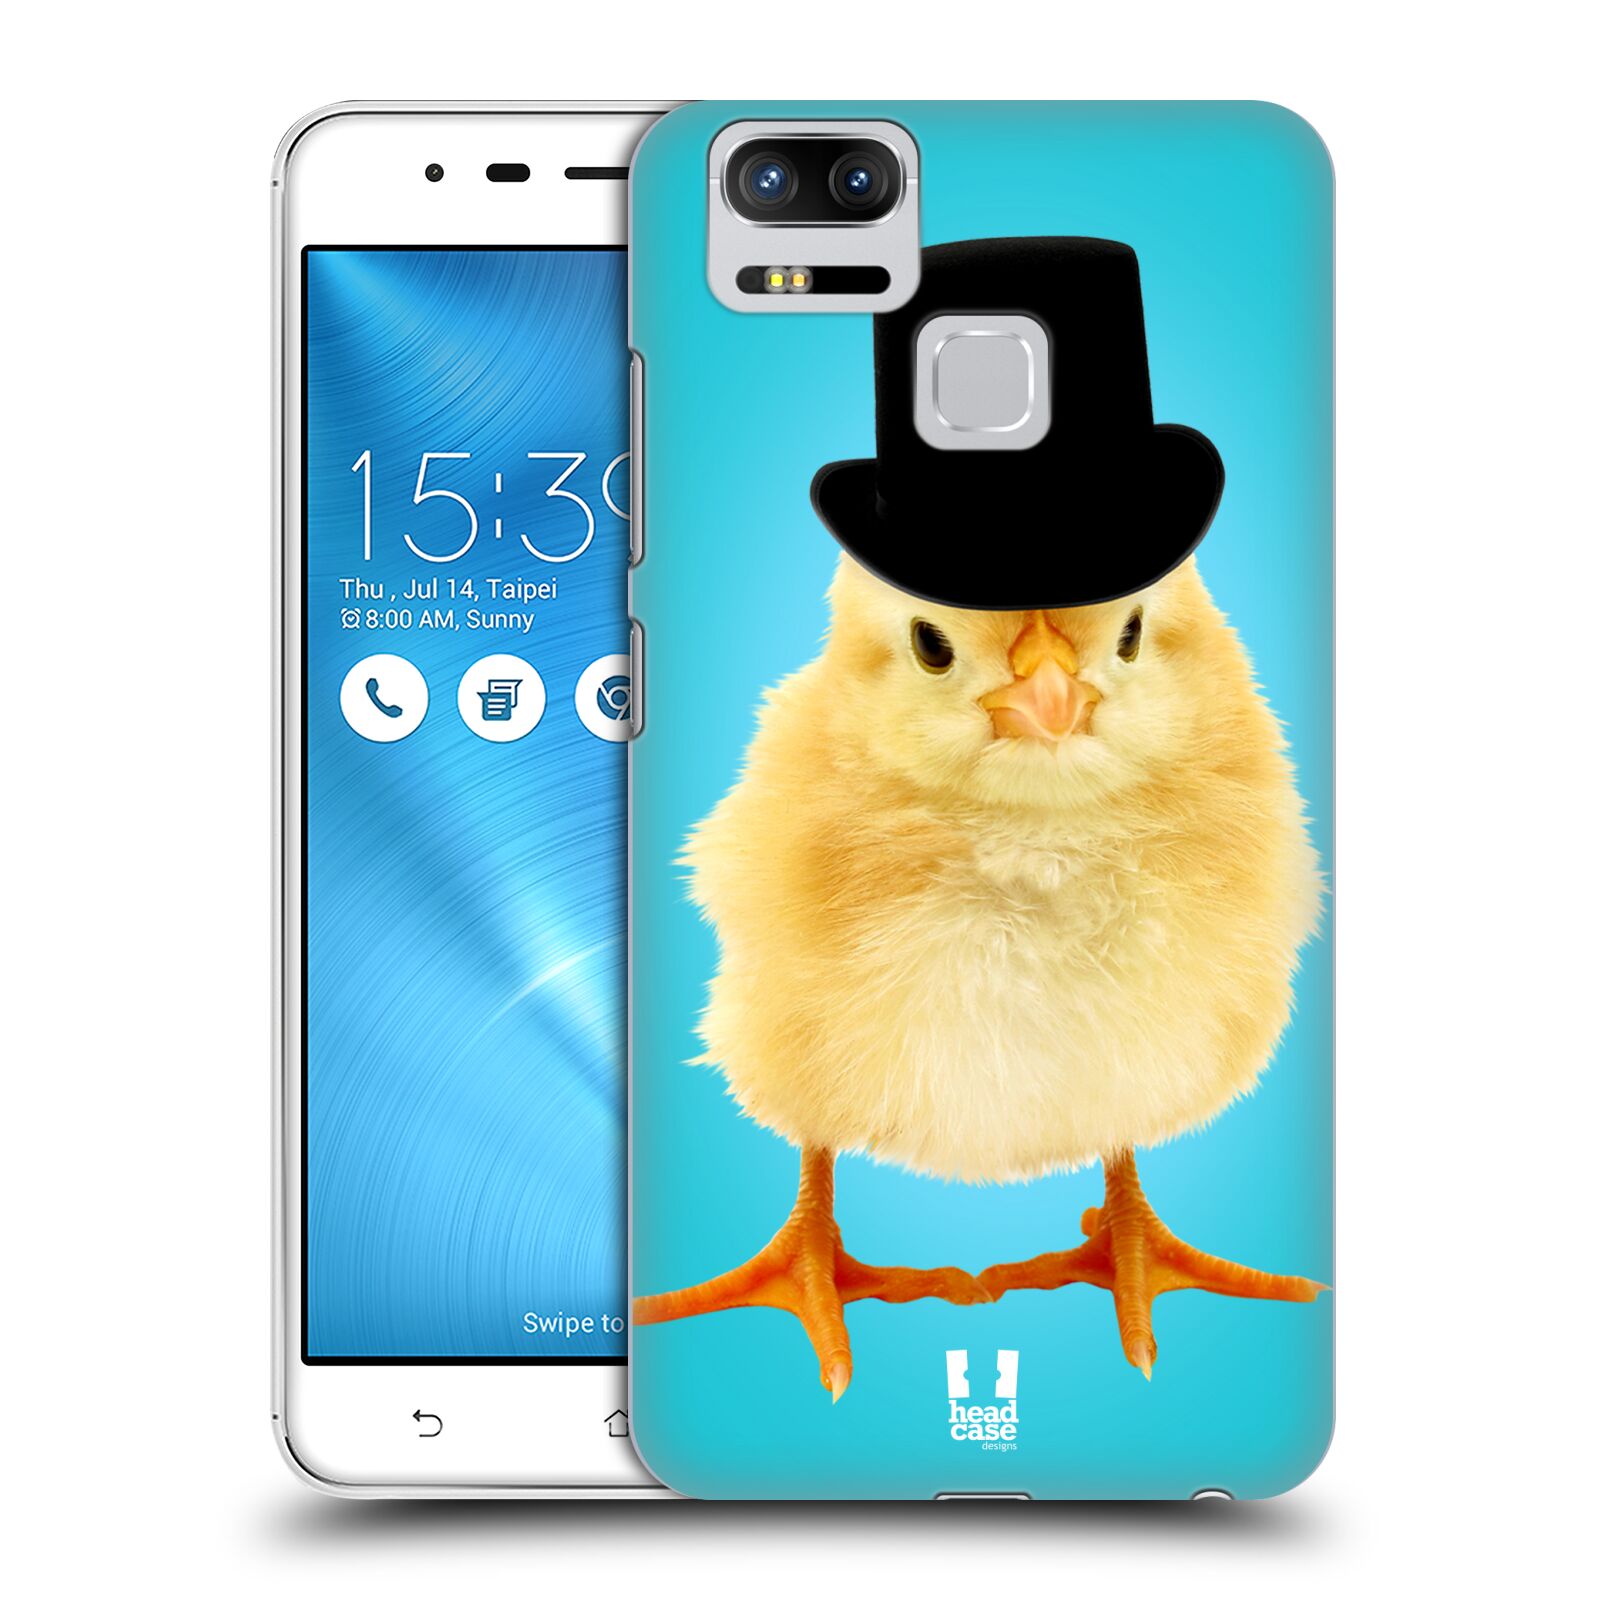 HEAD CASE plastový obal na mobil Asus Zenfone 3 Zoom ZE553KL vzor Legrační zvířátka Mr. kuřátko